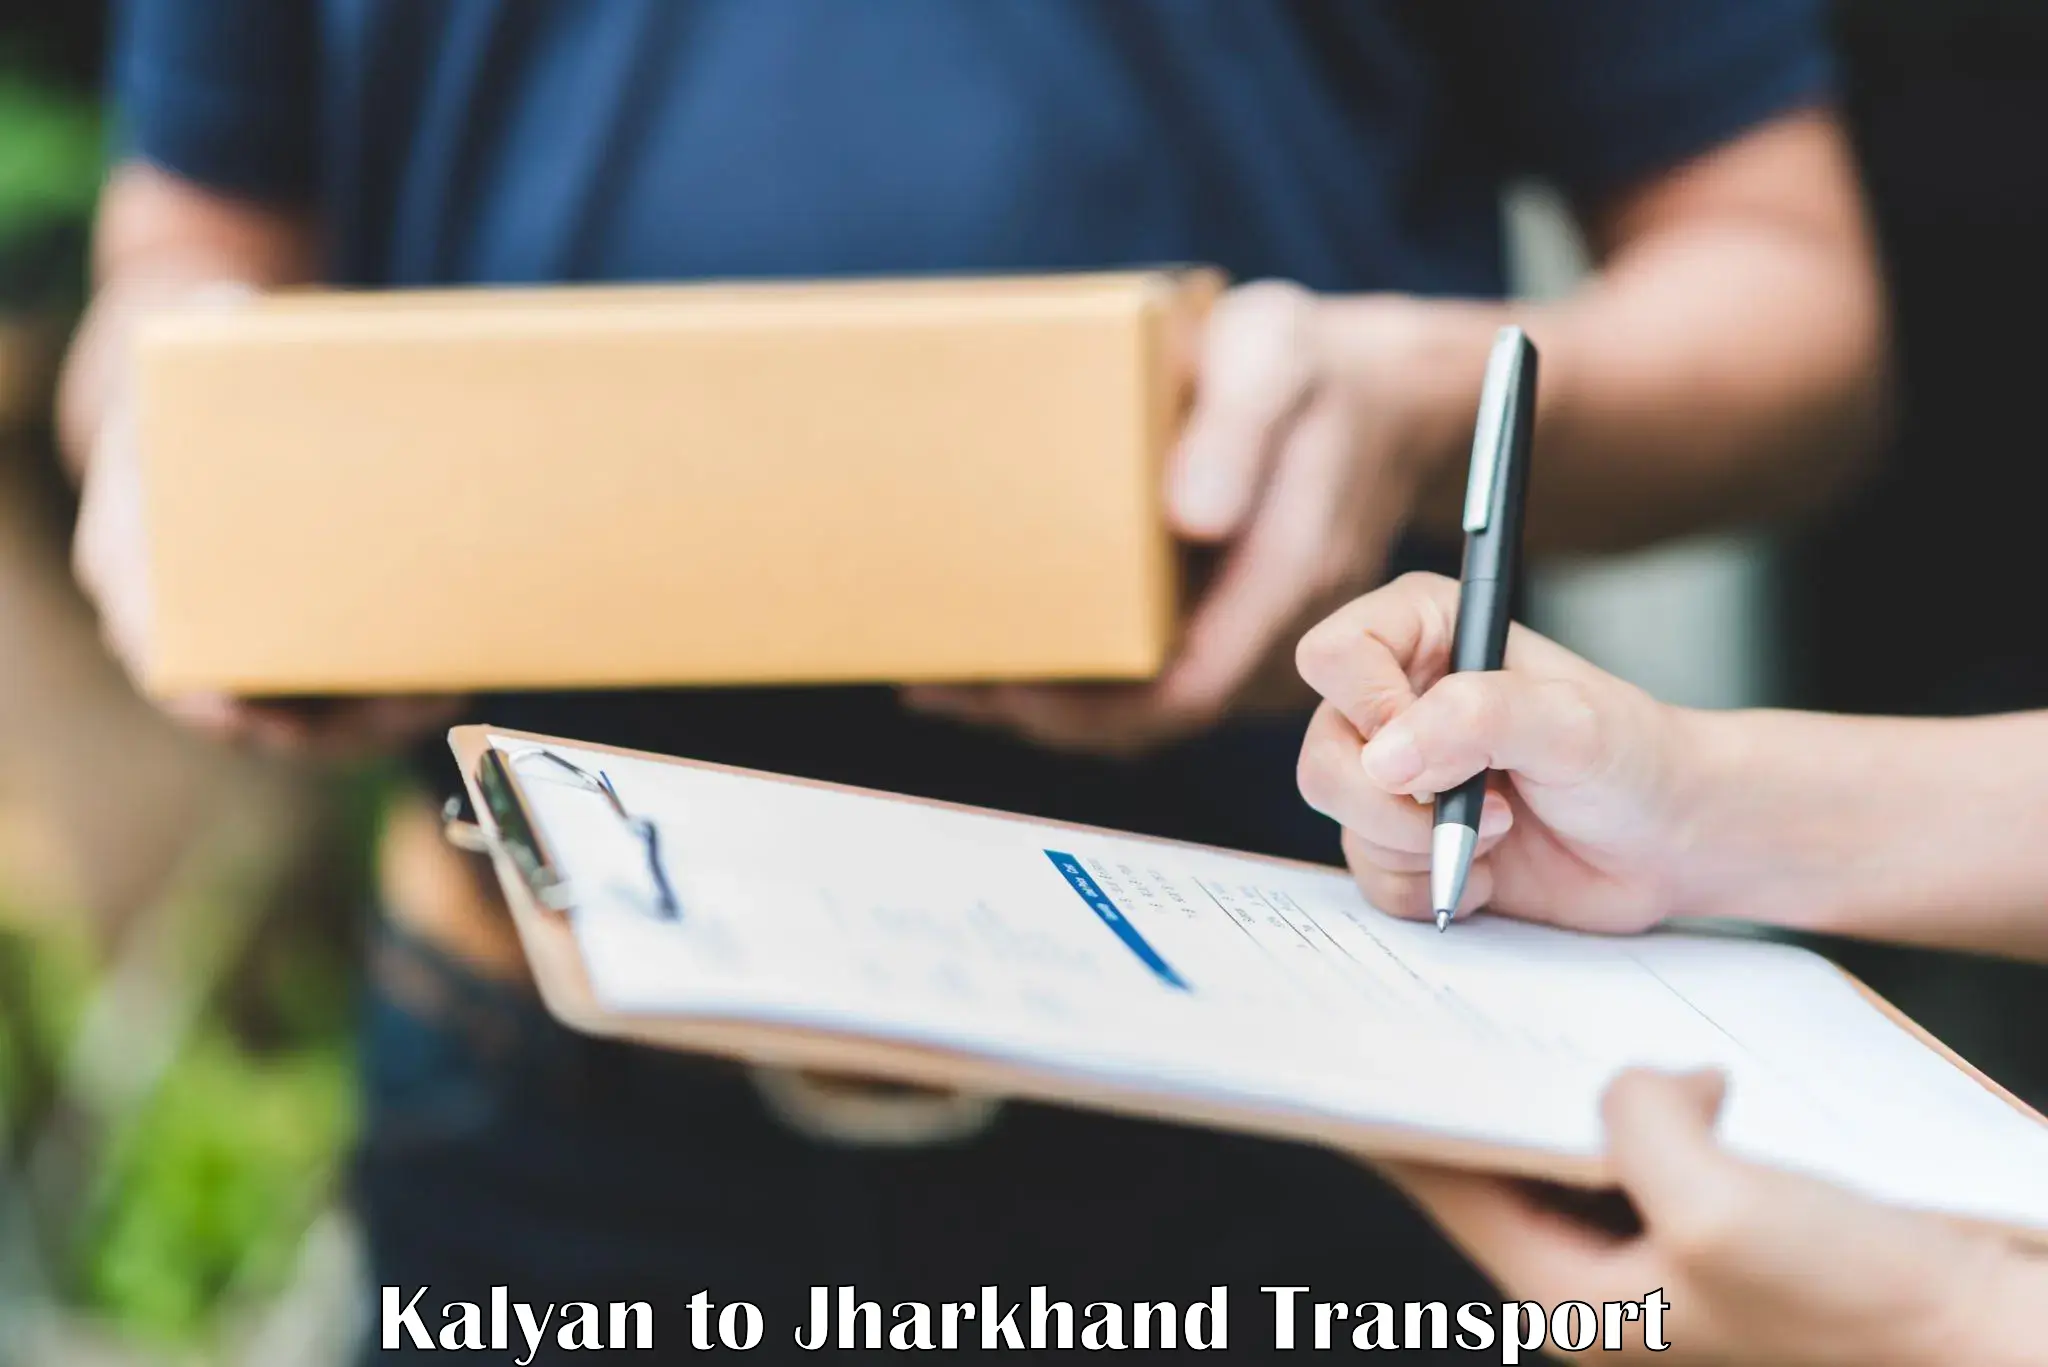 Transport in sharing Kalyan to Godda